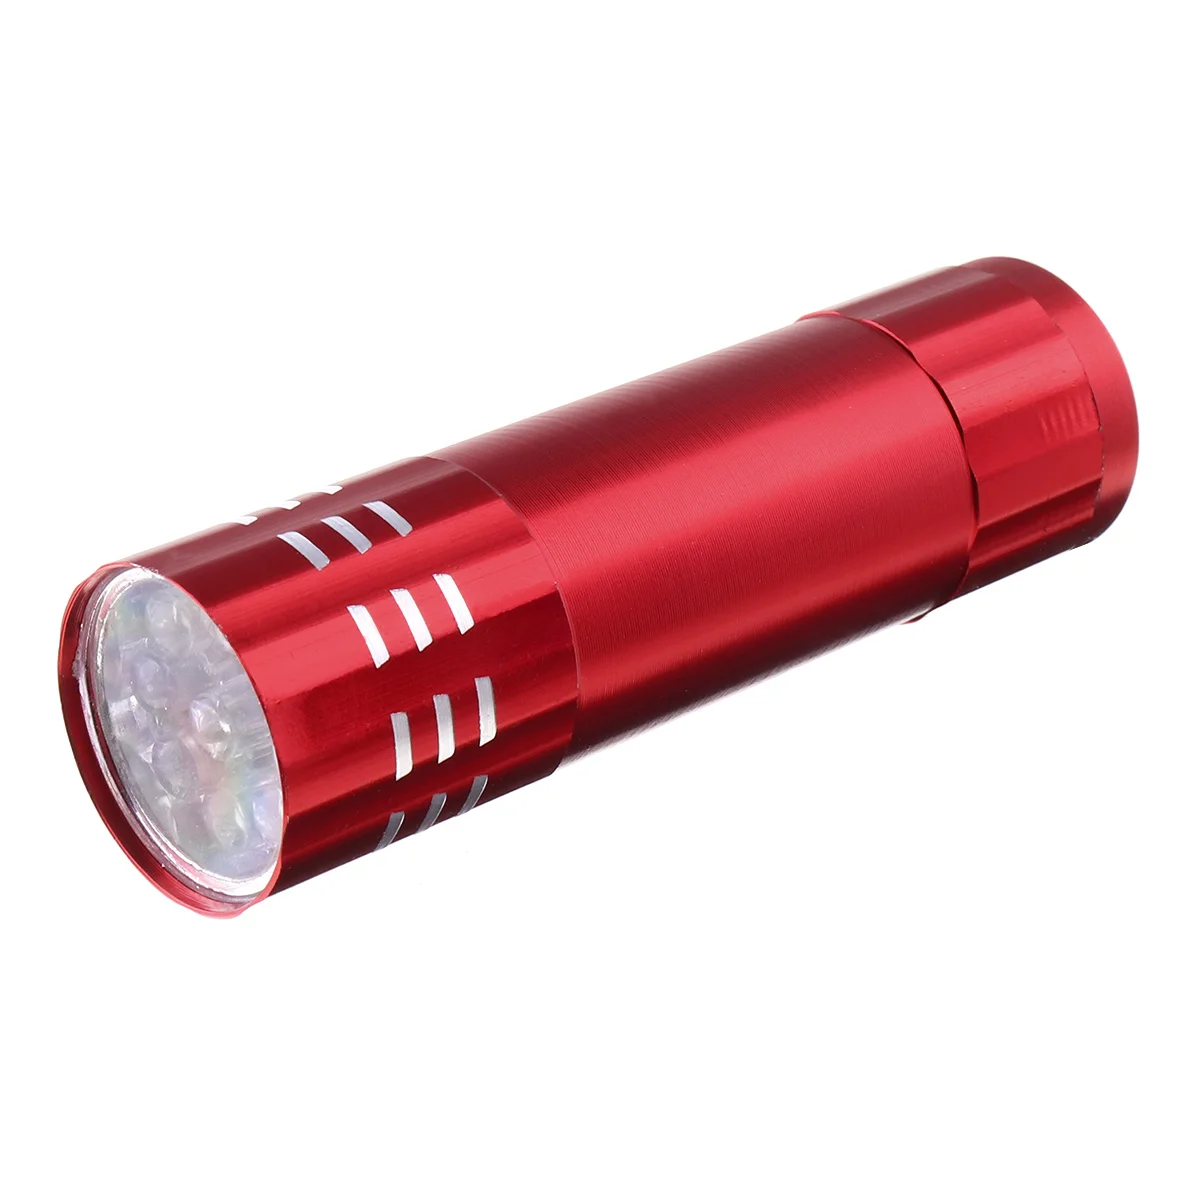 Monja 4 цвета портативная пилка для ногтей быстрое сушильное устройство УФ сушилка для геля лампа мини светодиодный фонарик ультрафиолетовая лампа для маникюра инструмент